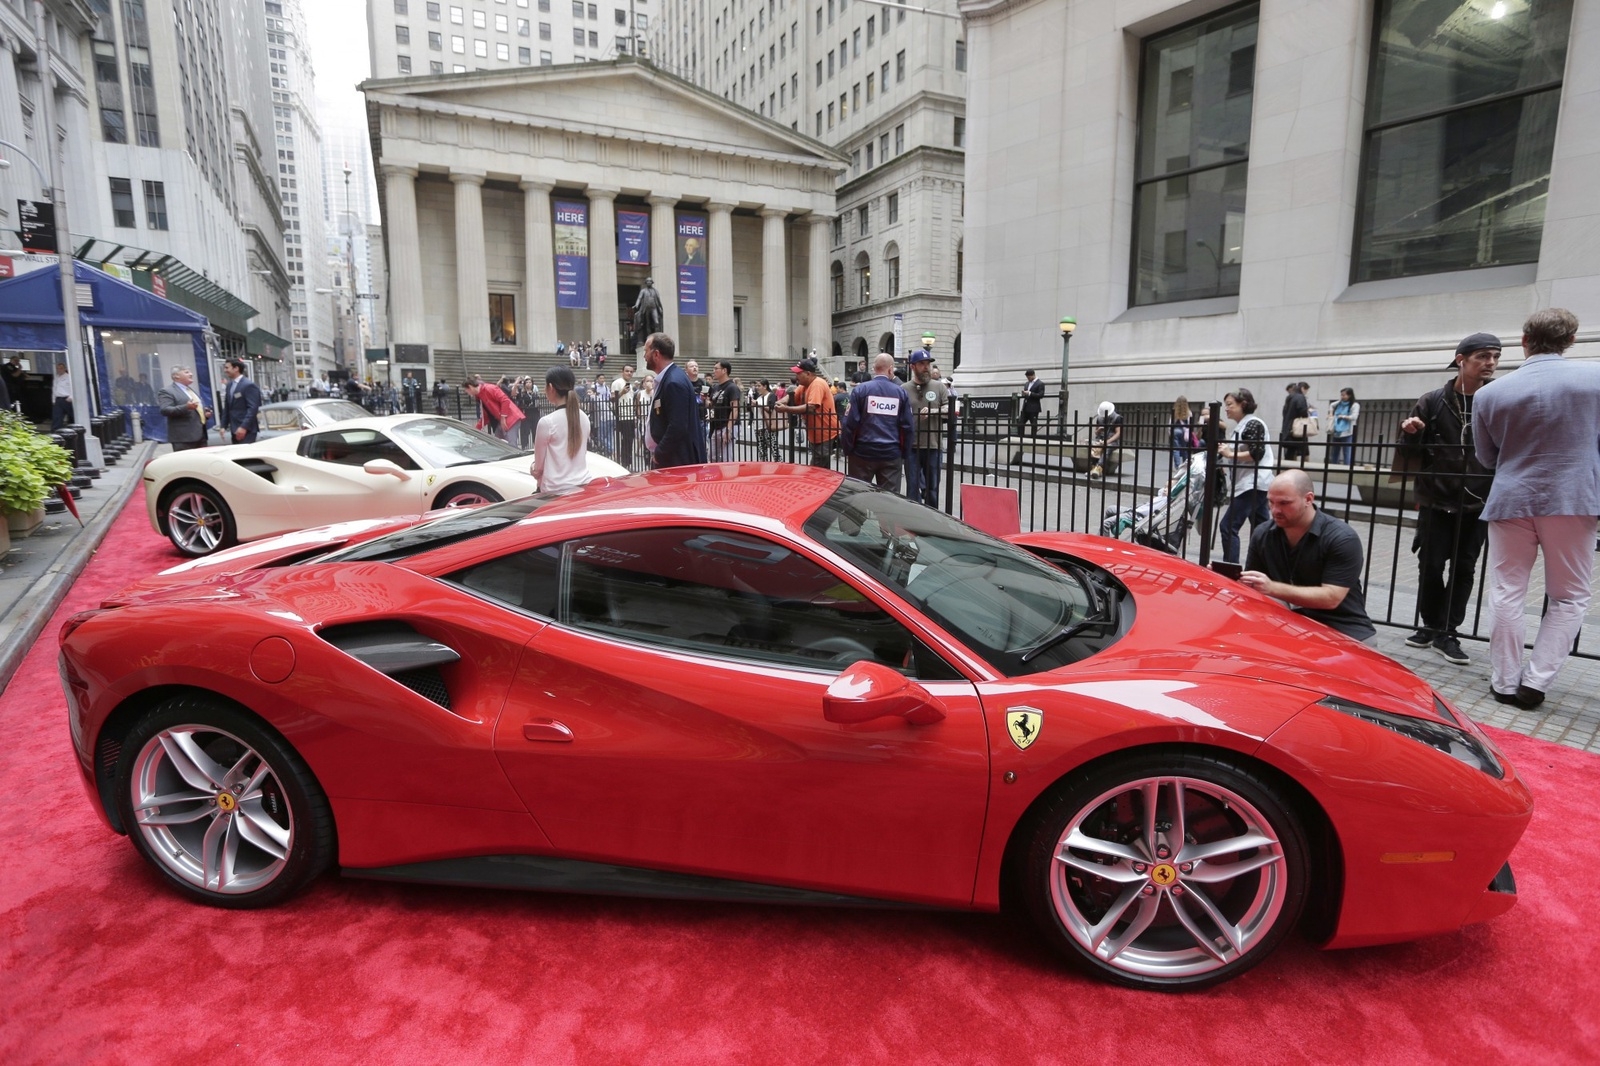 När Ferrari firade sitt 70-årsjubileum i oktober i år radade man upp några av sina modeller framför New York-börsen.
Foto: Seth Wenig